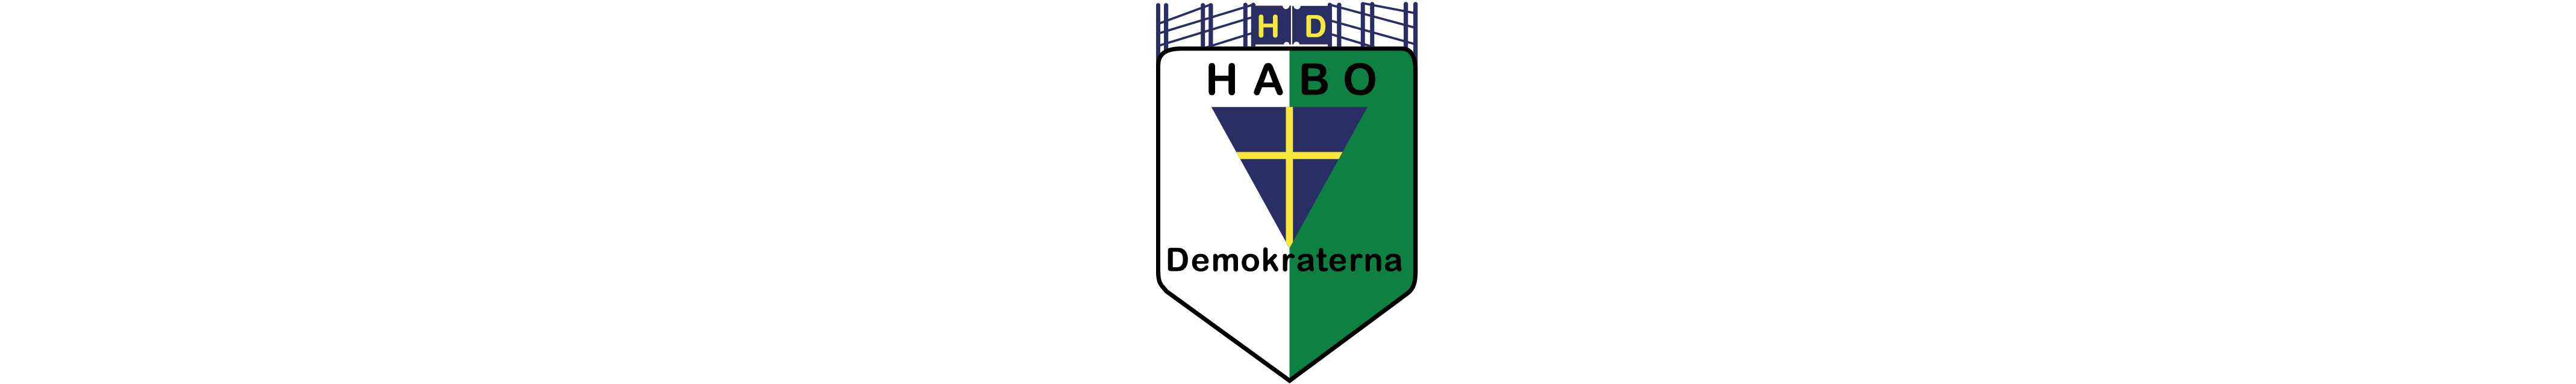 Symbol partibeteckning för Habodemokraterna.